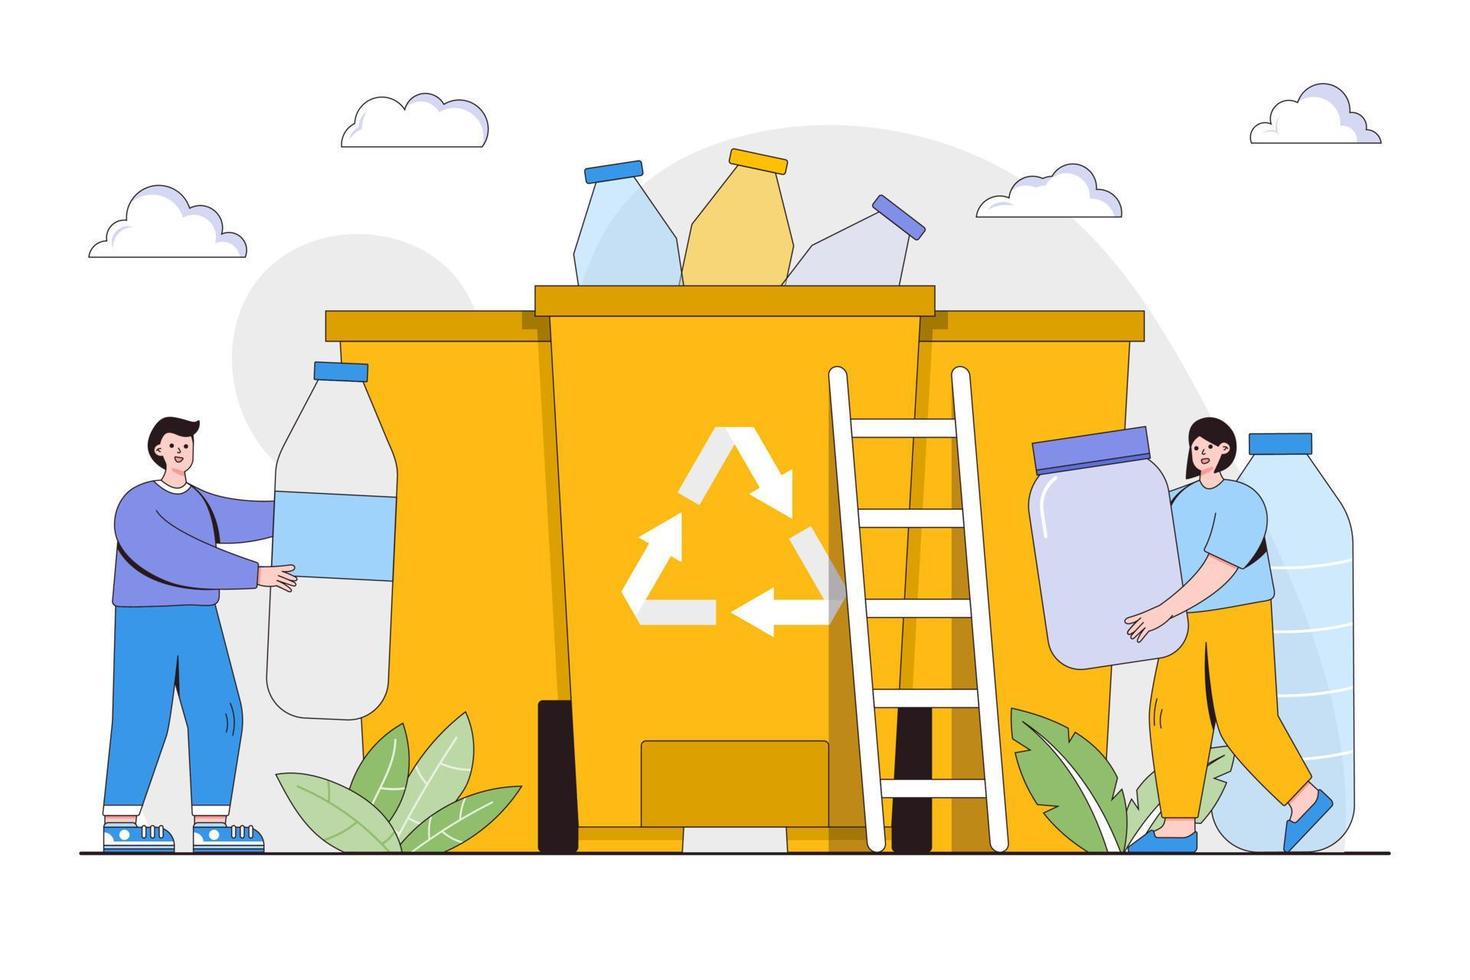 plastic verontreiniging probleem concept. mensen verzamelen en sorteren plastic uitschot in recycling vuilnis bak. schets ontwerp stijl minimaal vector illustratie voor landen bladzijde